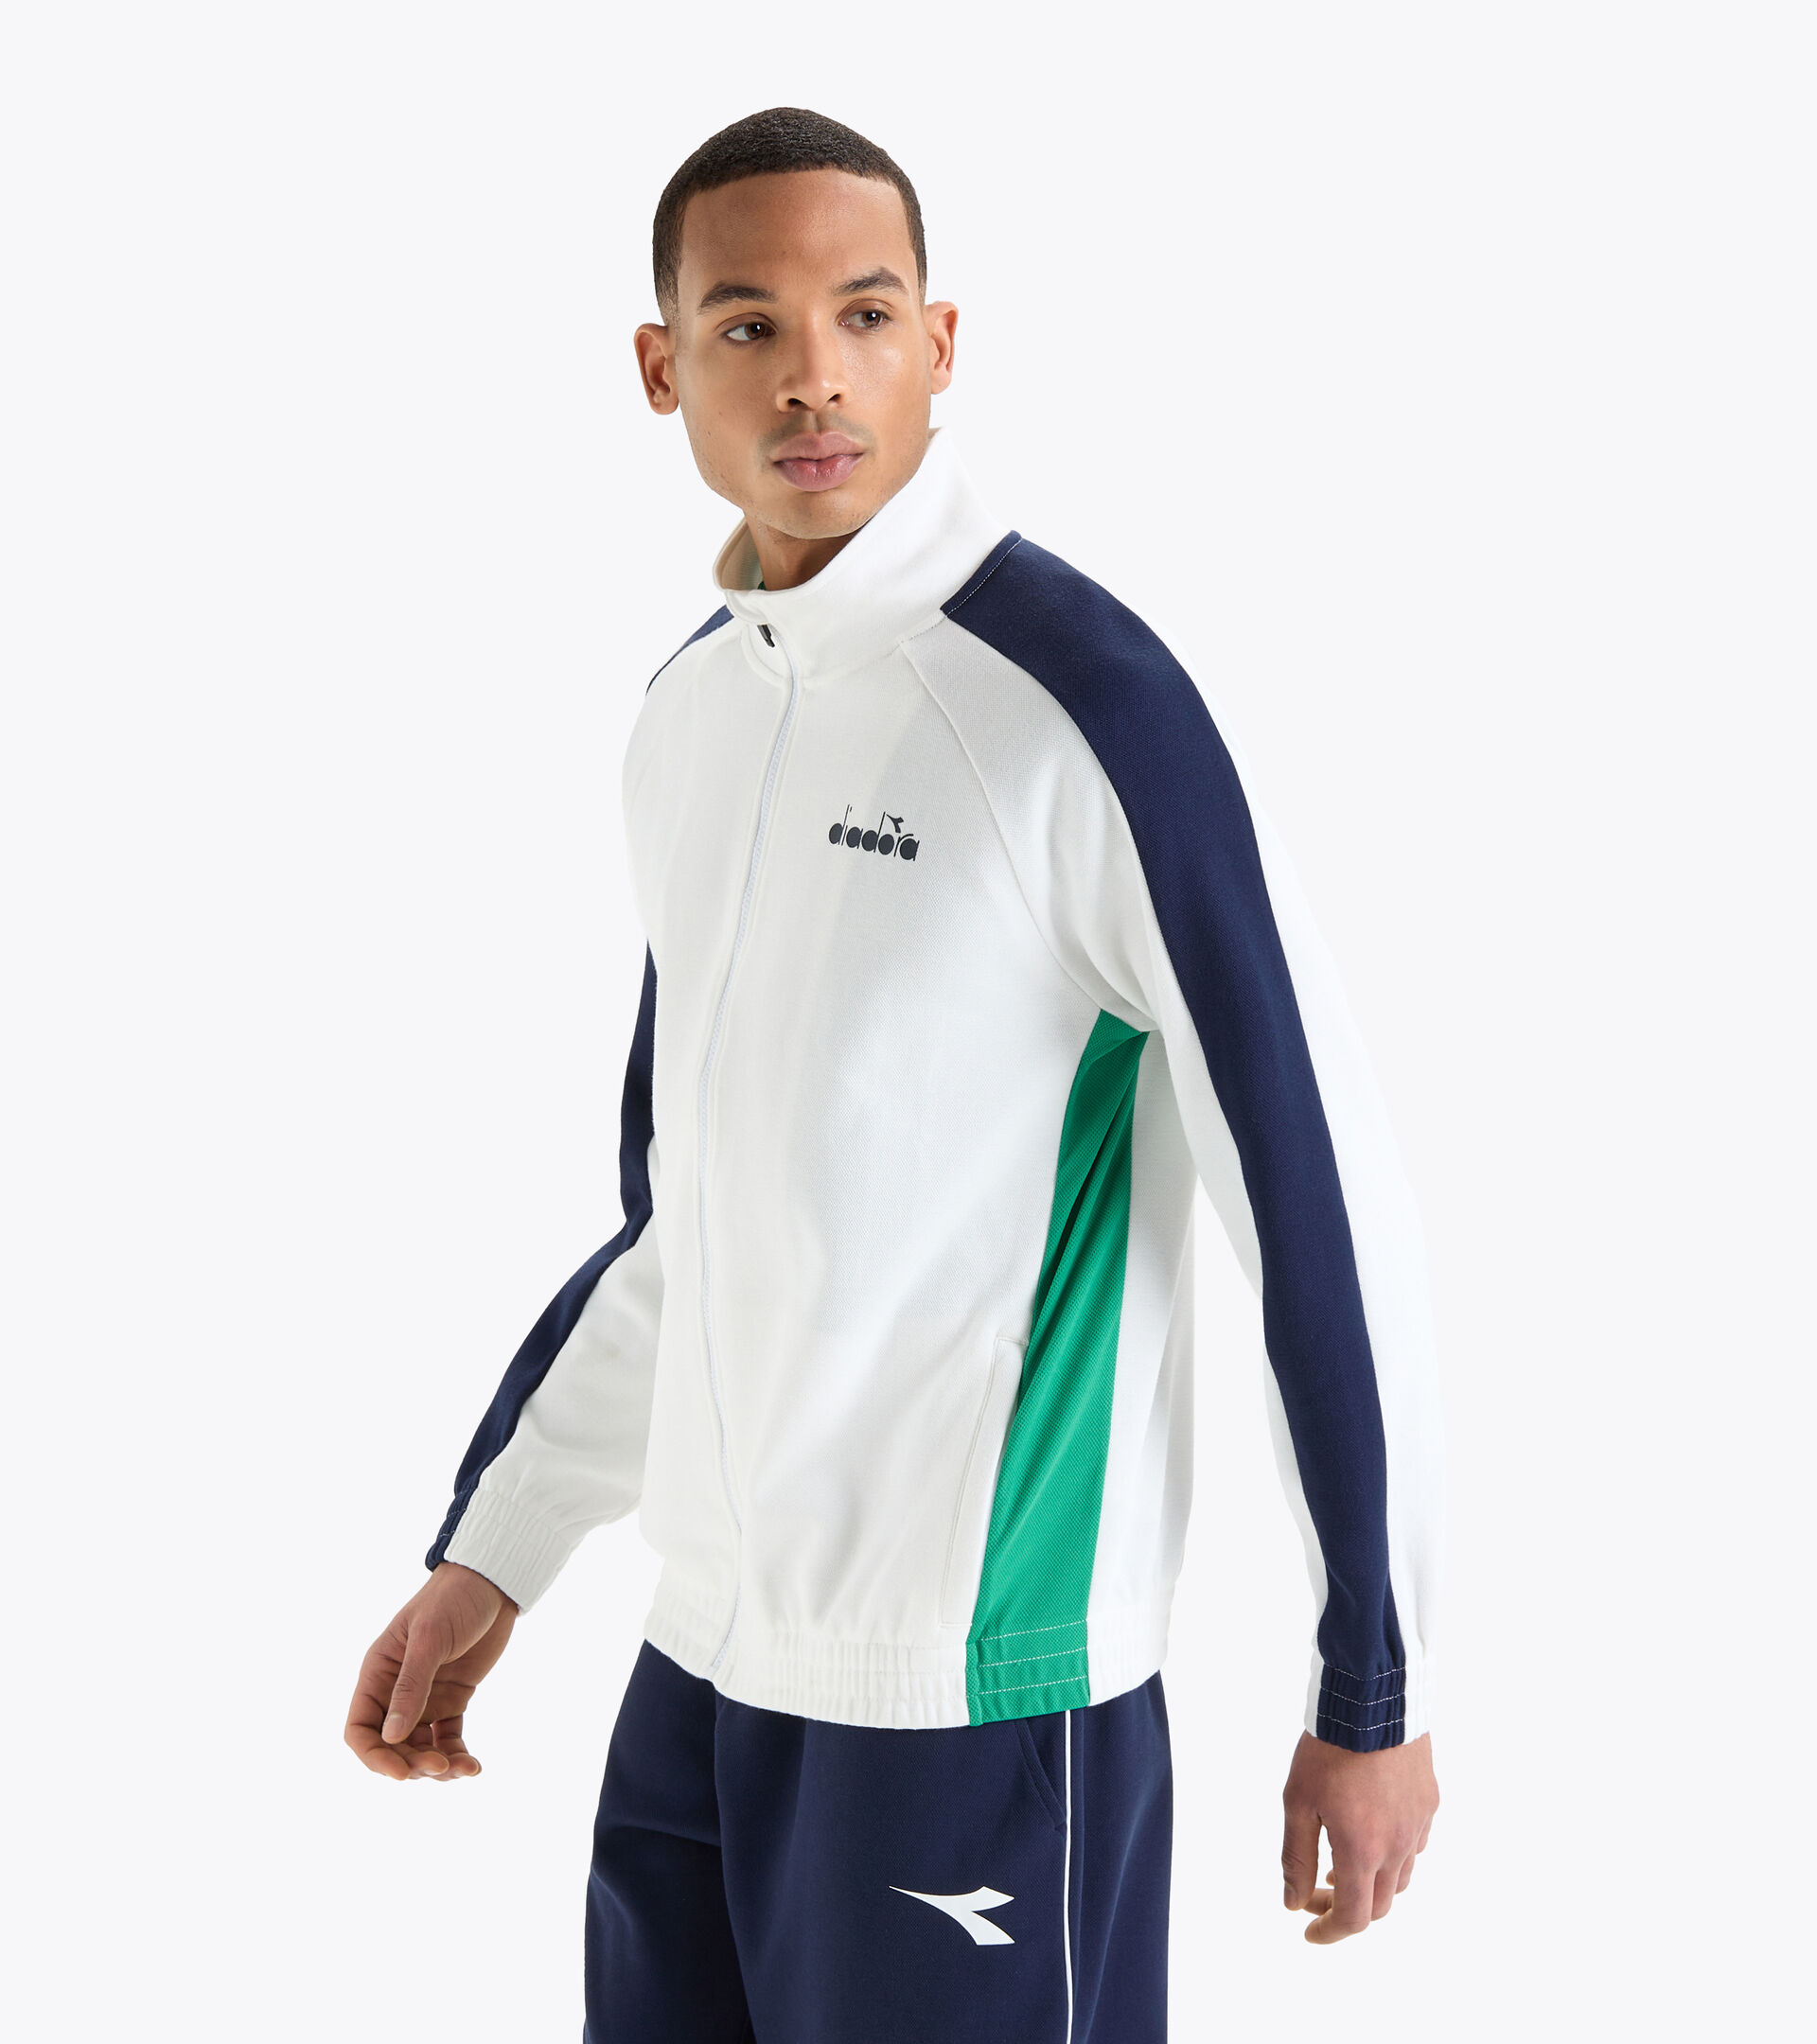 Tennis jacket - Men FZ JACKET OPTICAL WHITE - Diadora